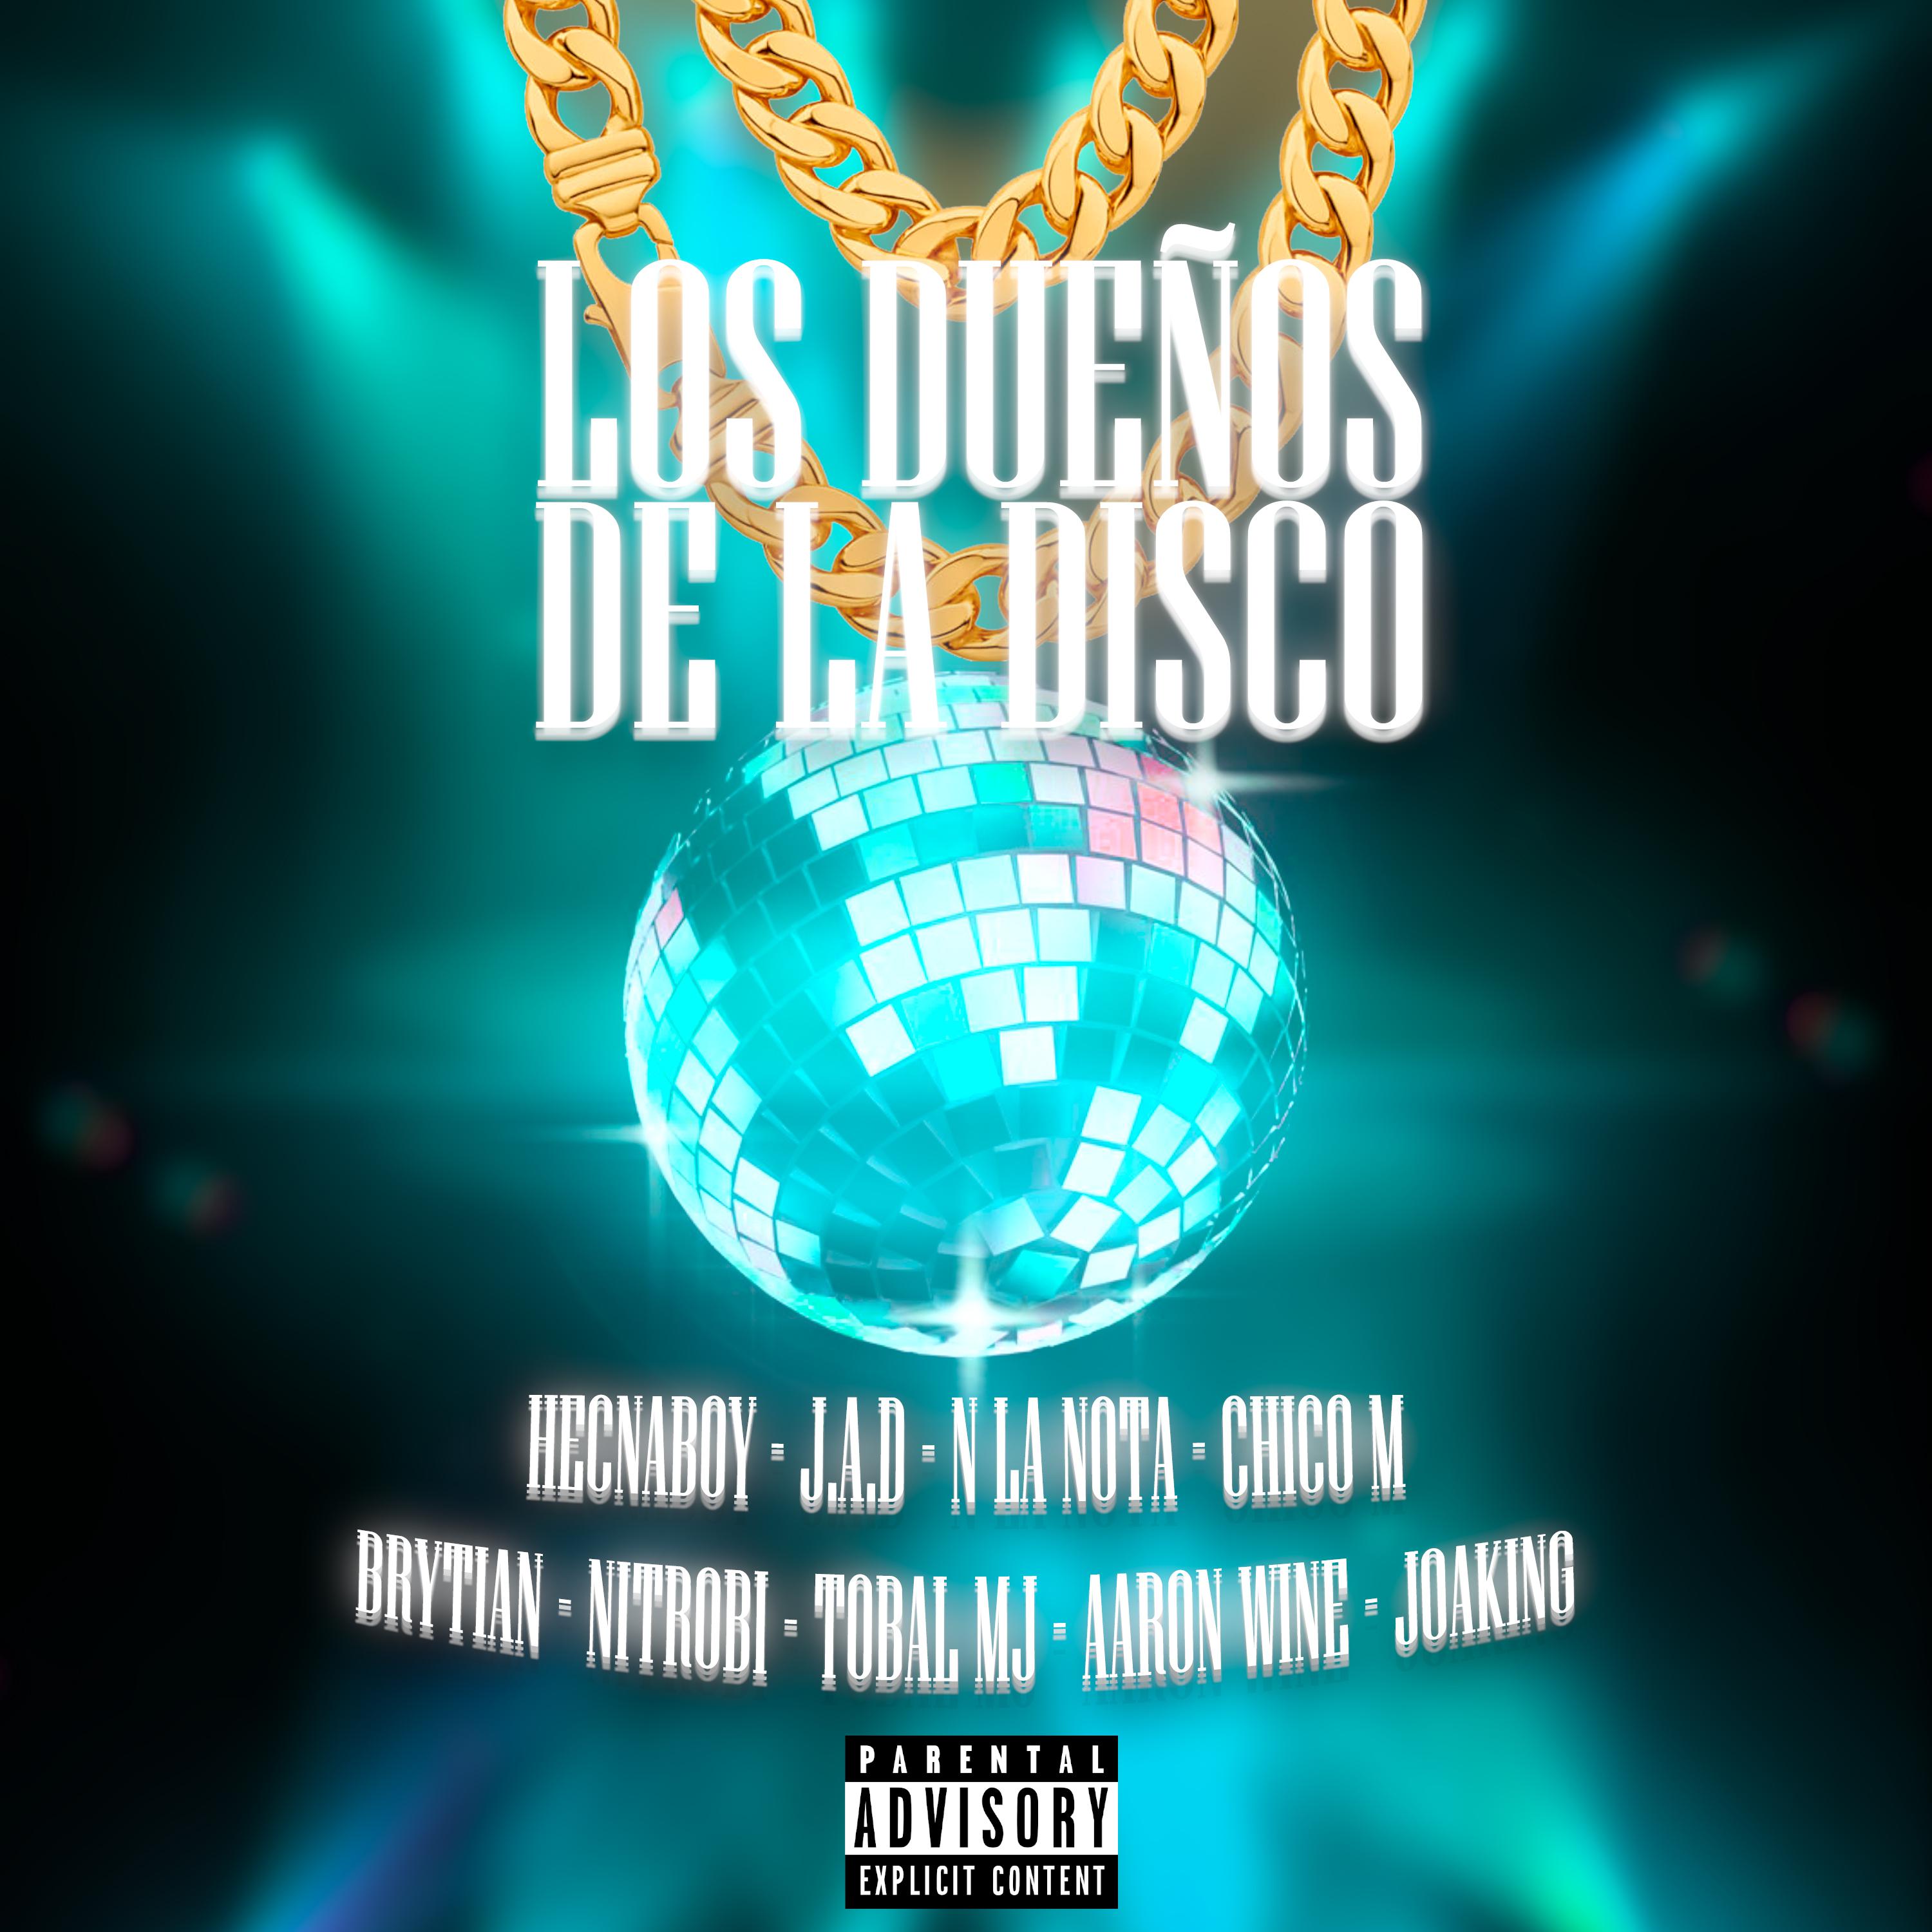 Постер альбома Los Dueños de la Disco